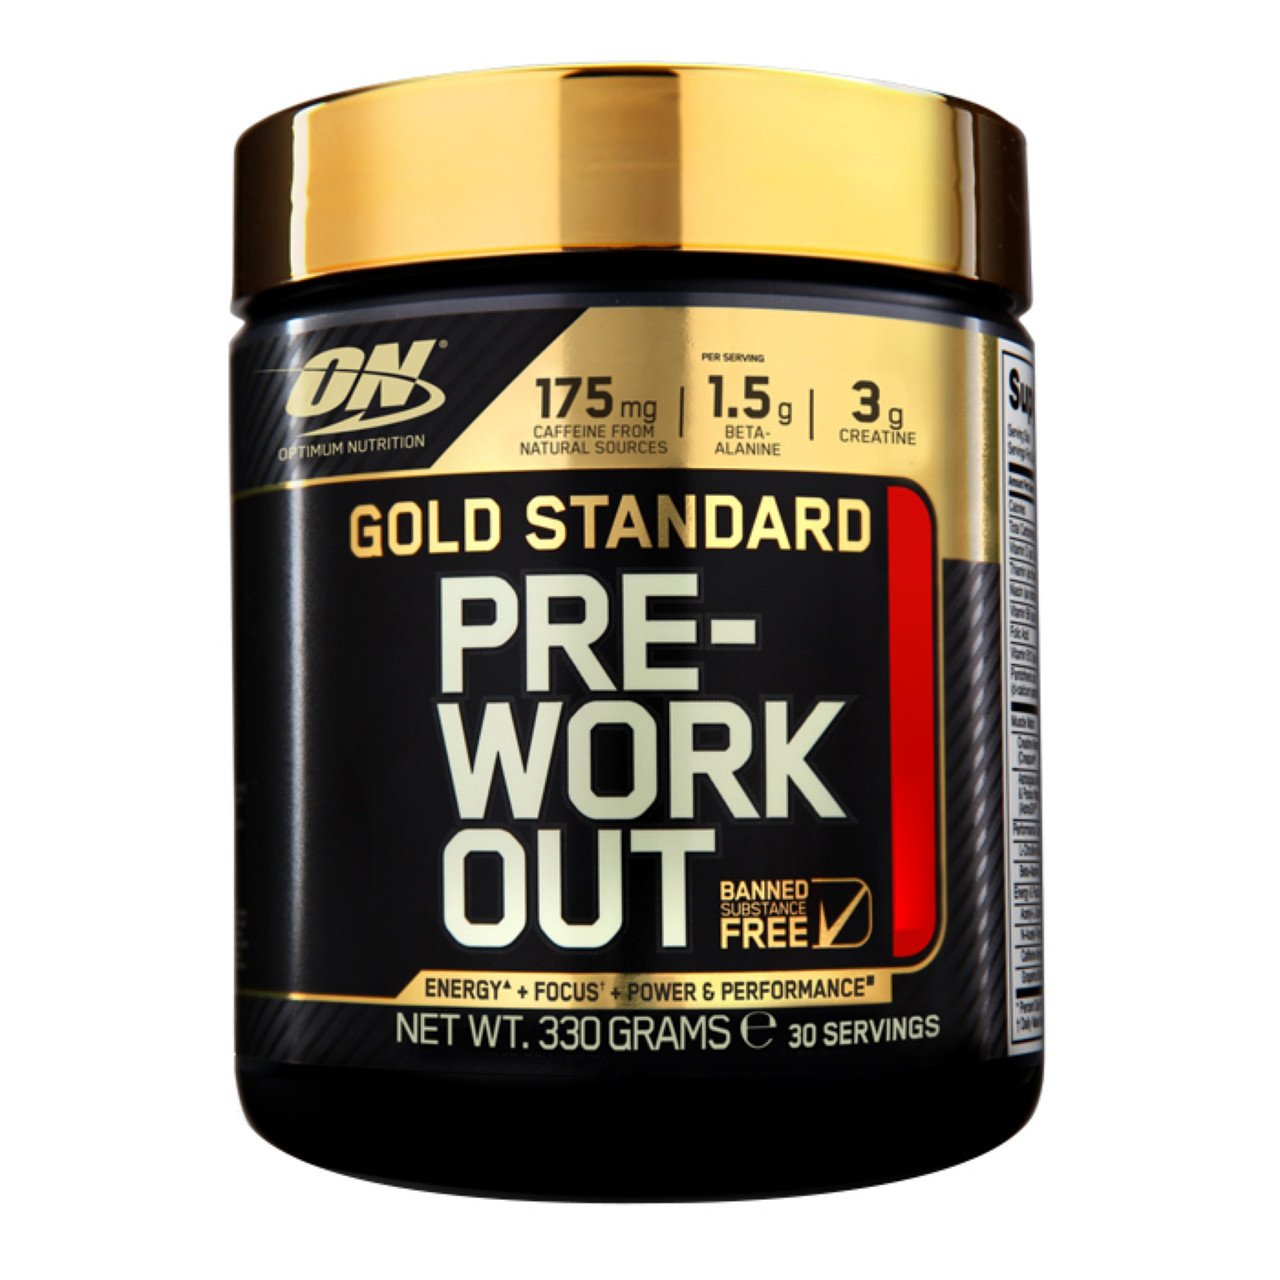 Предтренировочный комплекс Optimum Gold Standard Pre Workout, 330 грамм Яблоко,  мл, Optimum Nutrition. Предтренировочный комплекс. Энергия и выносливость 